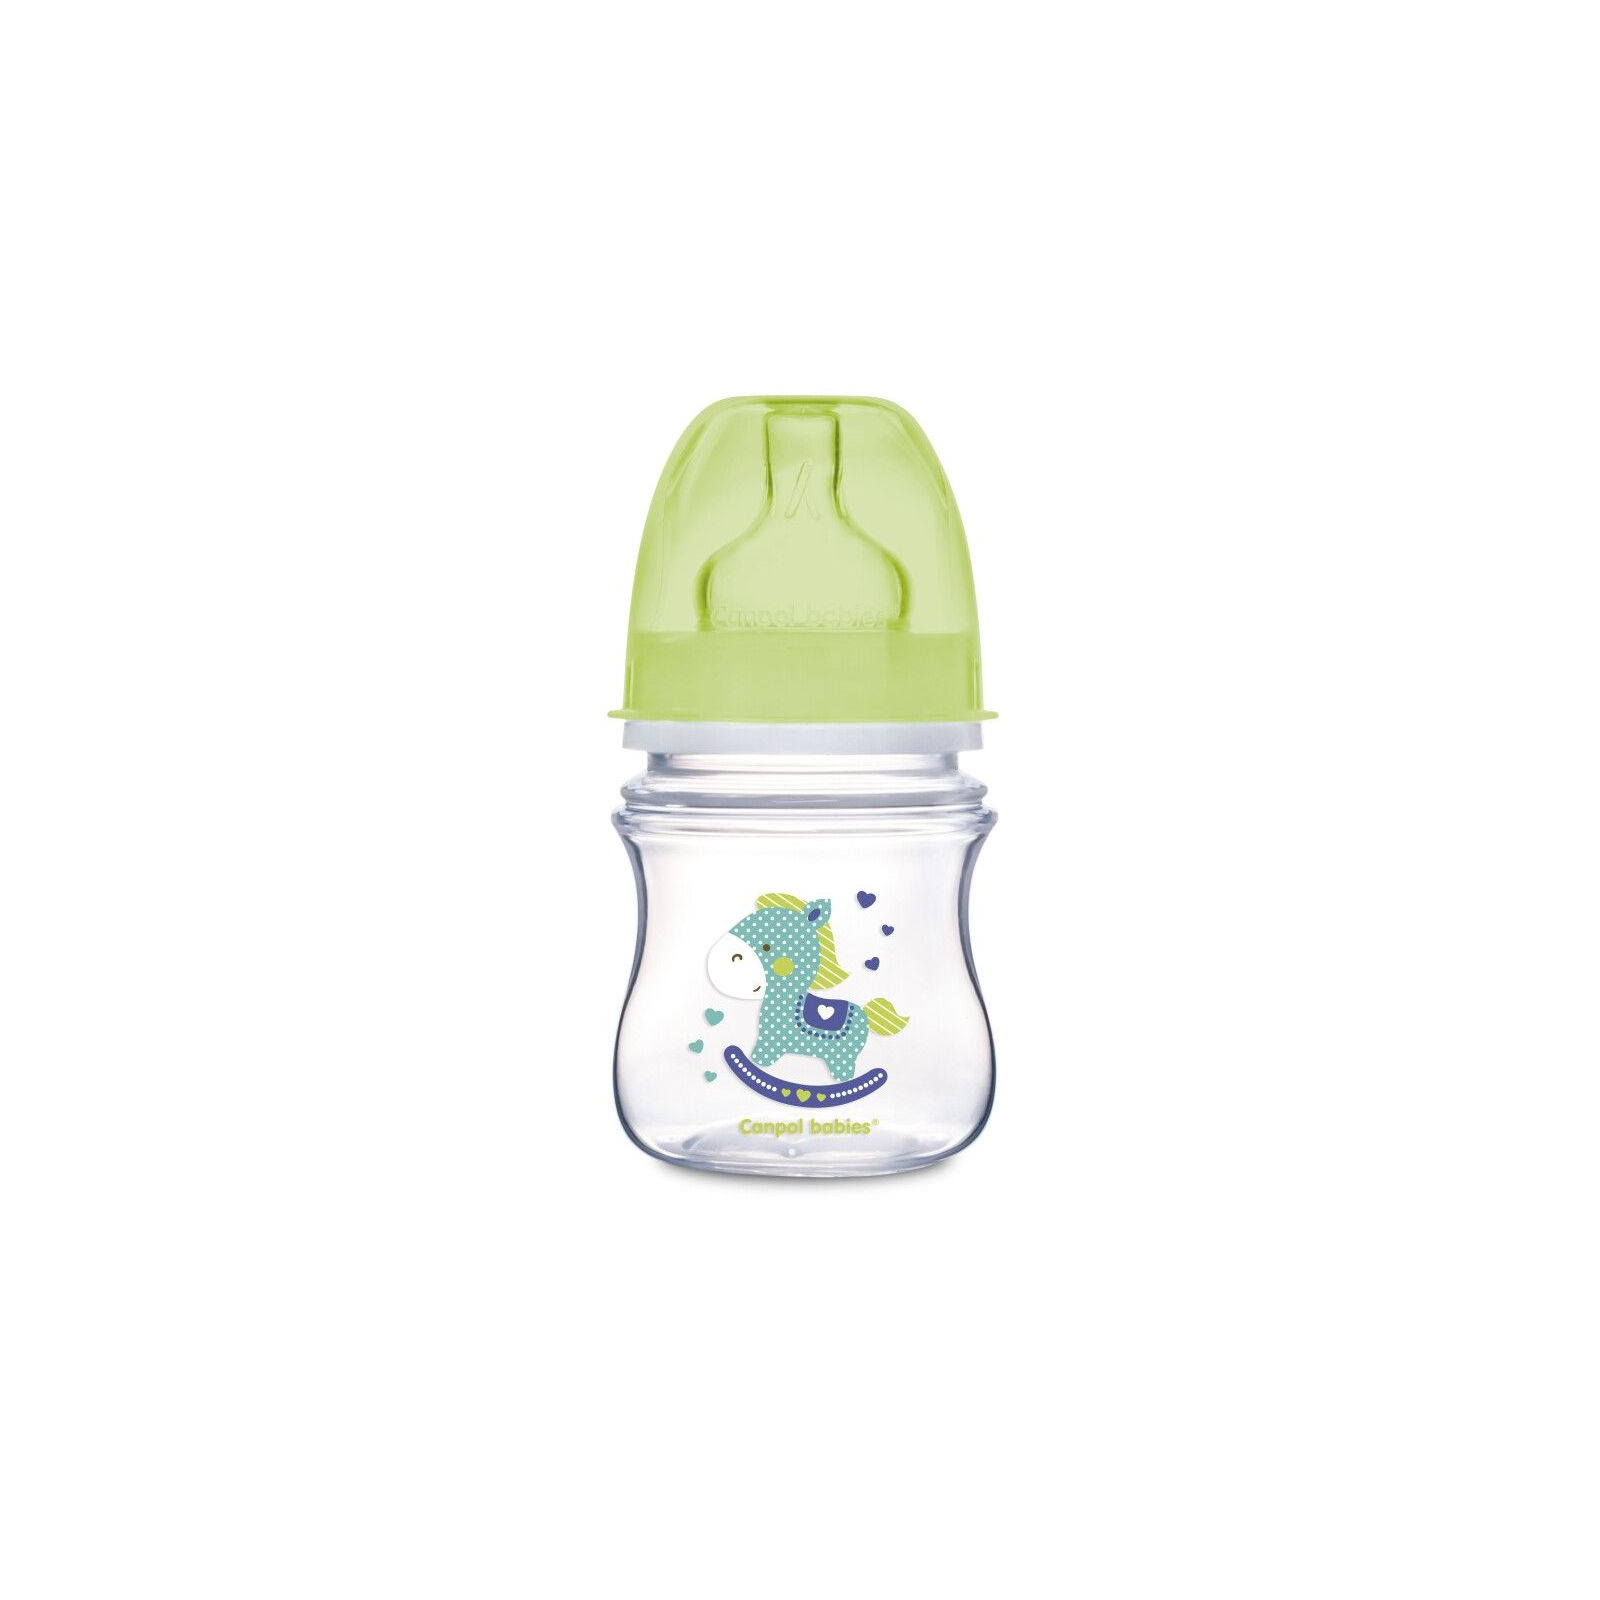 Бутылочка для кормления Canpol babies Easystart Цветные зверьки 240 мл Бирюзовая (35/206)